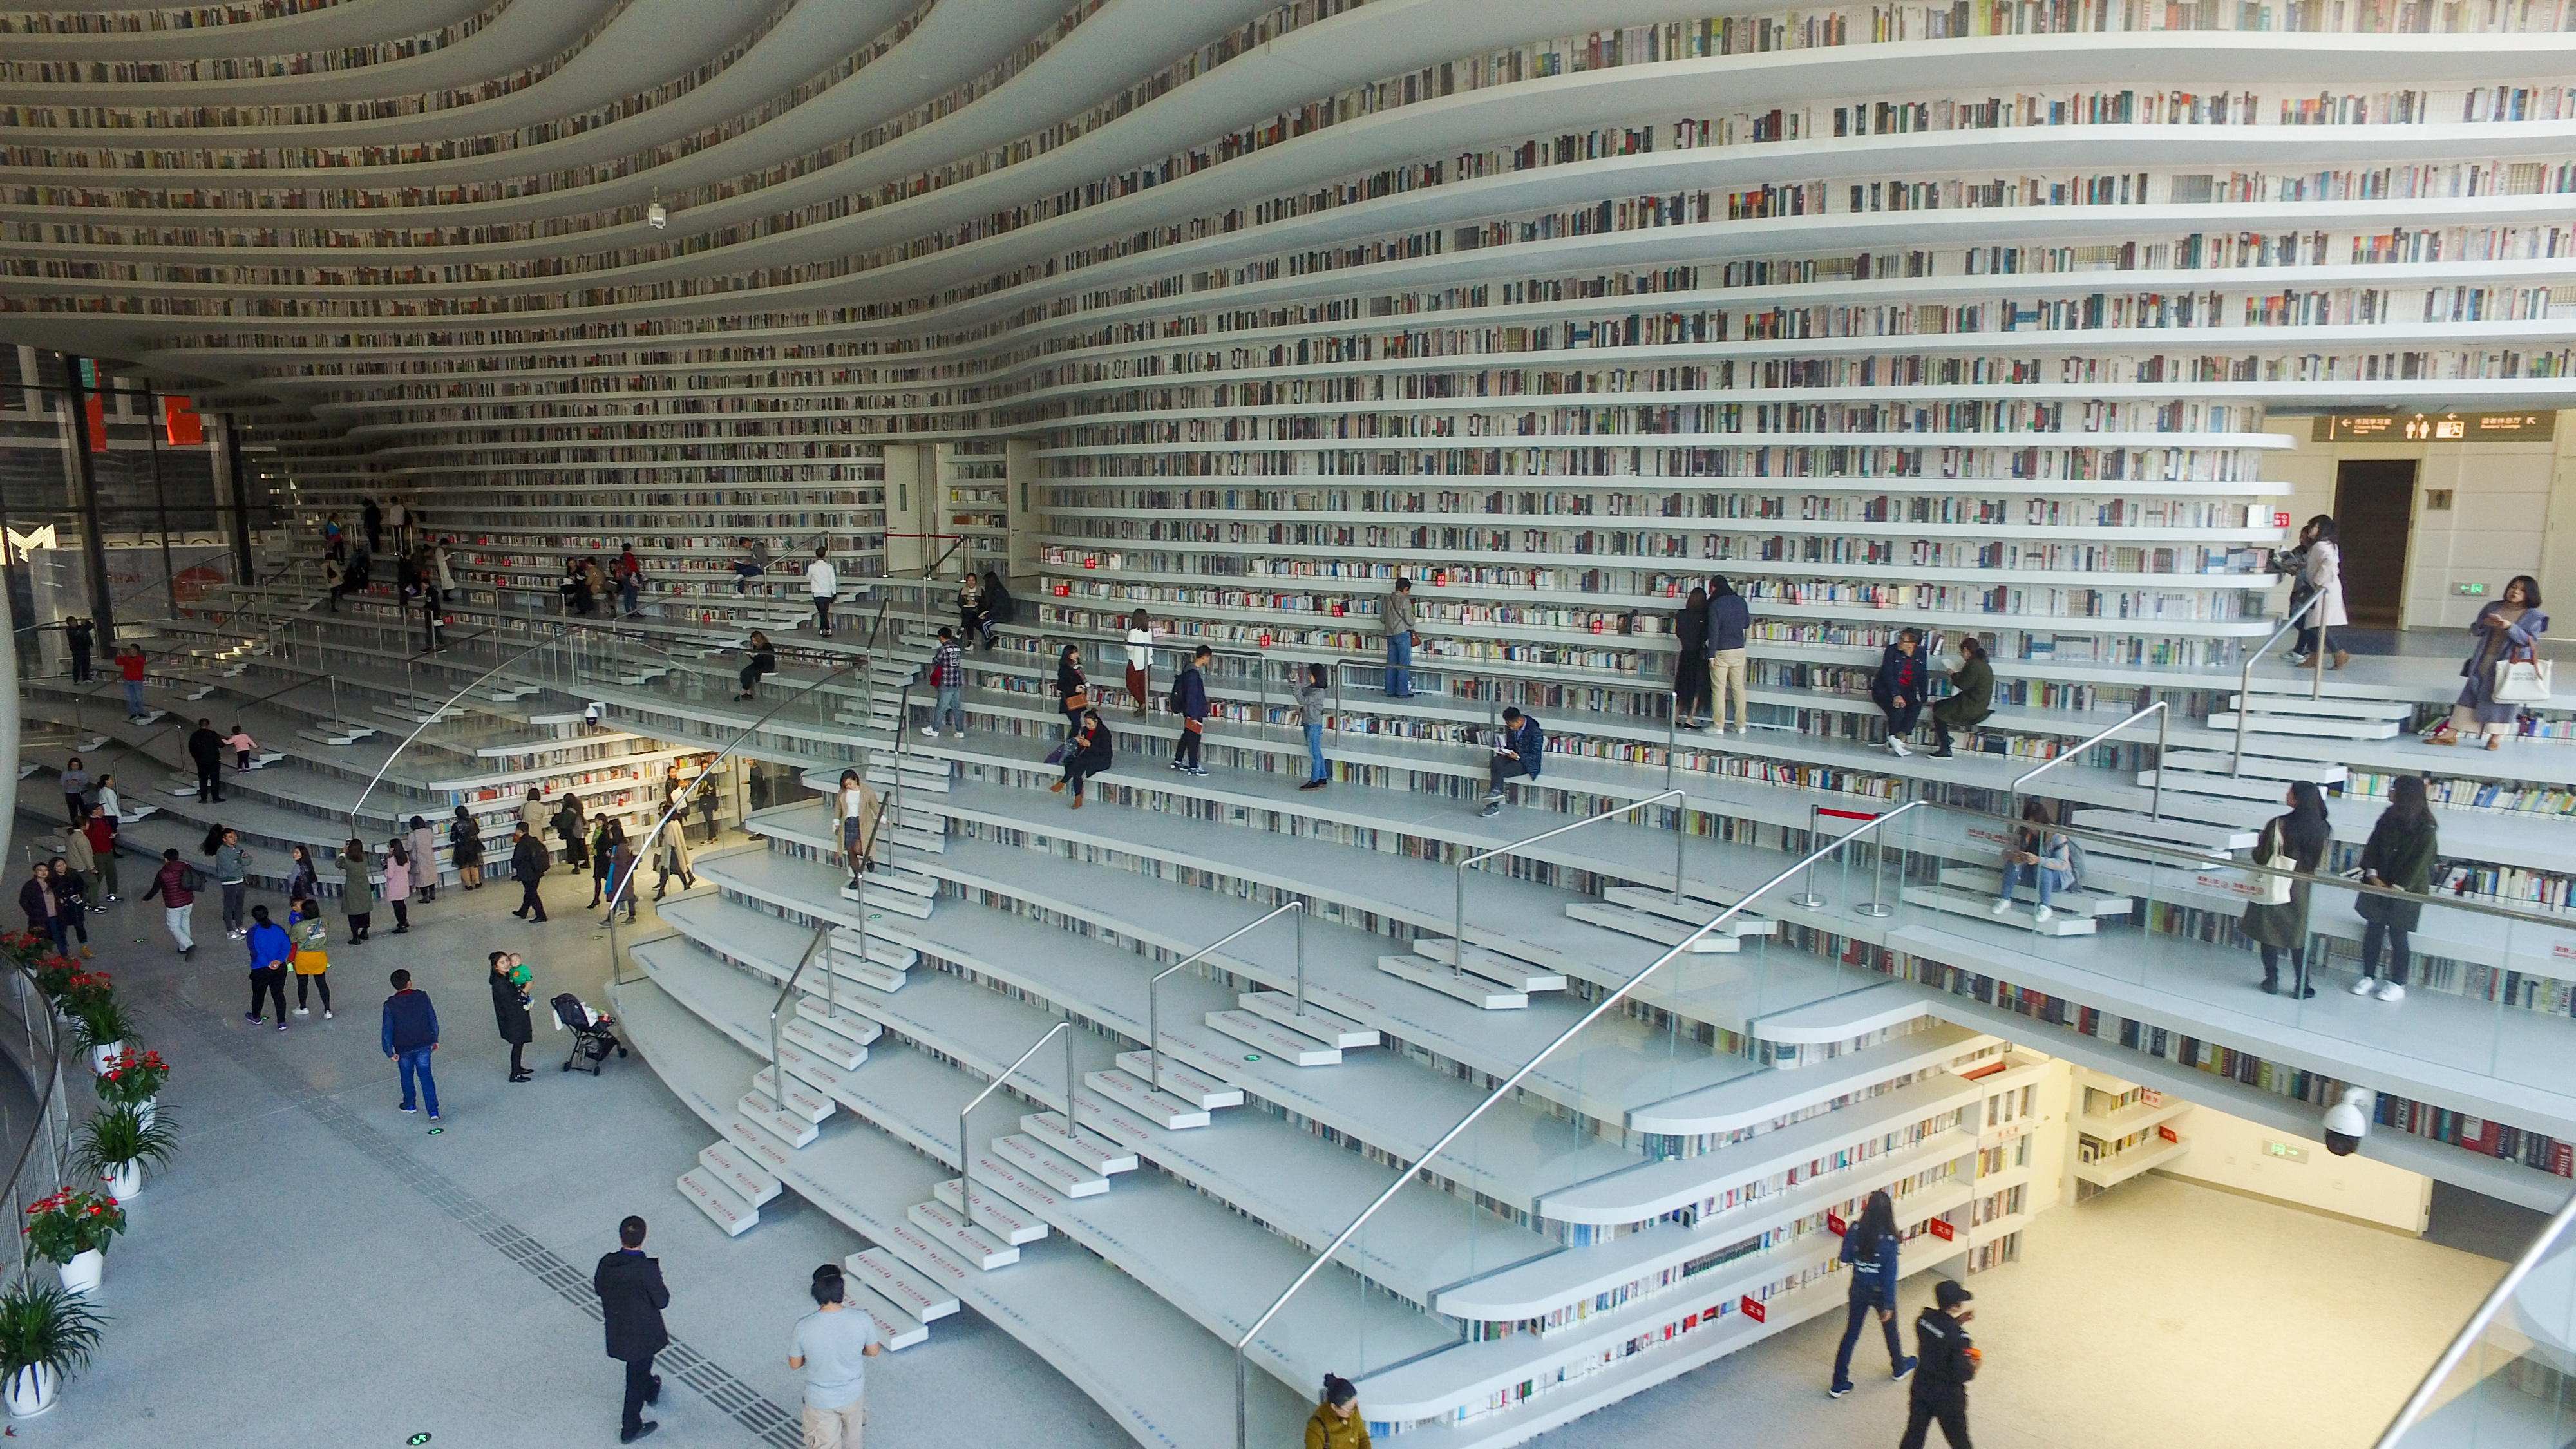 A könyvtár, ahol öt emelet magasan ölelnek körbe a polcok